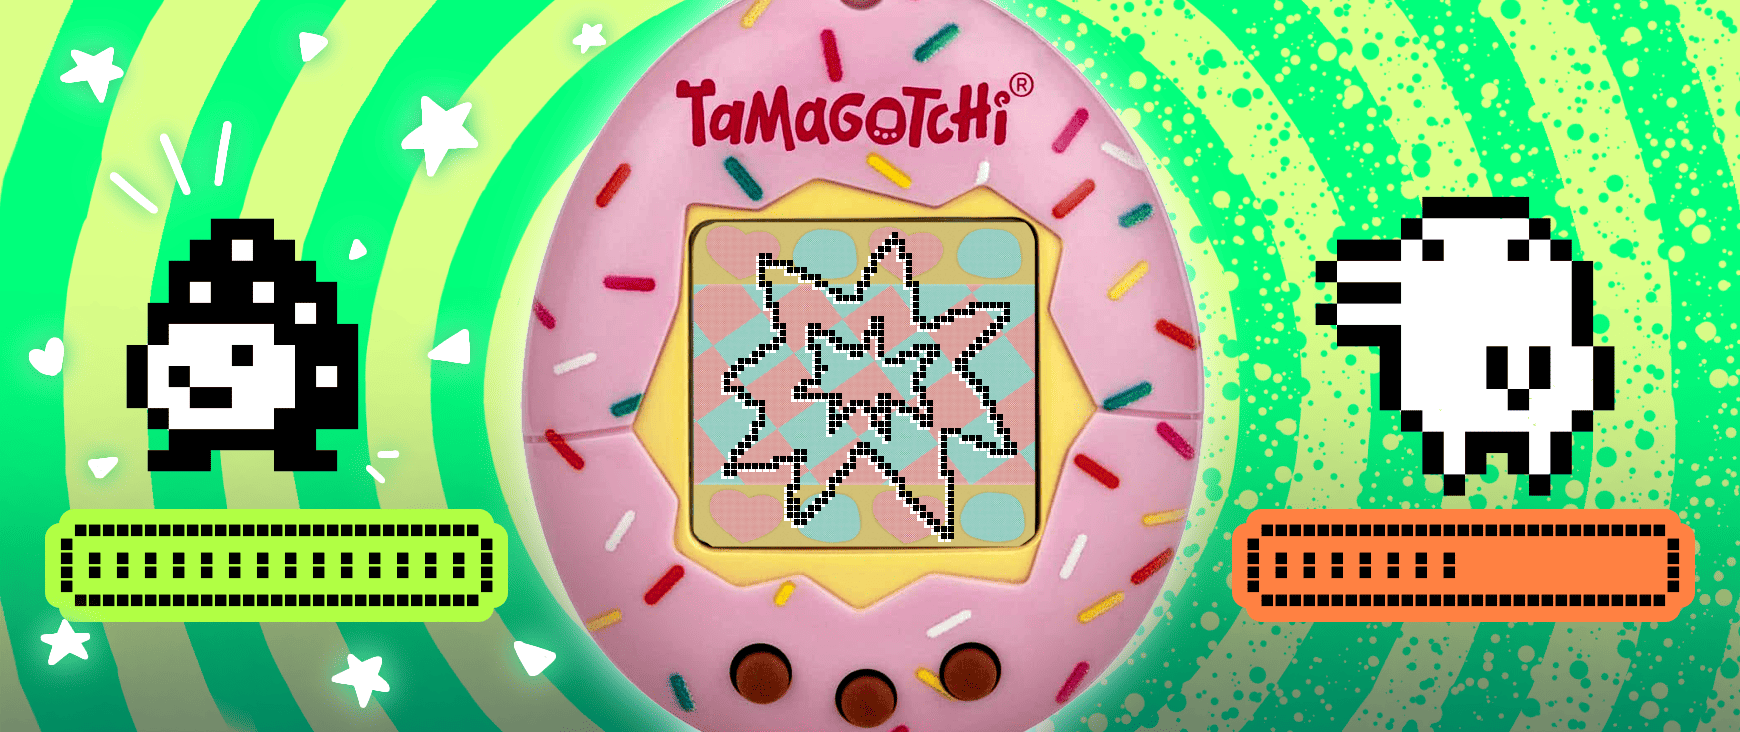 Full Tamagotchi discipline meter